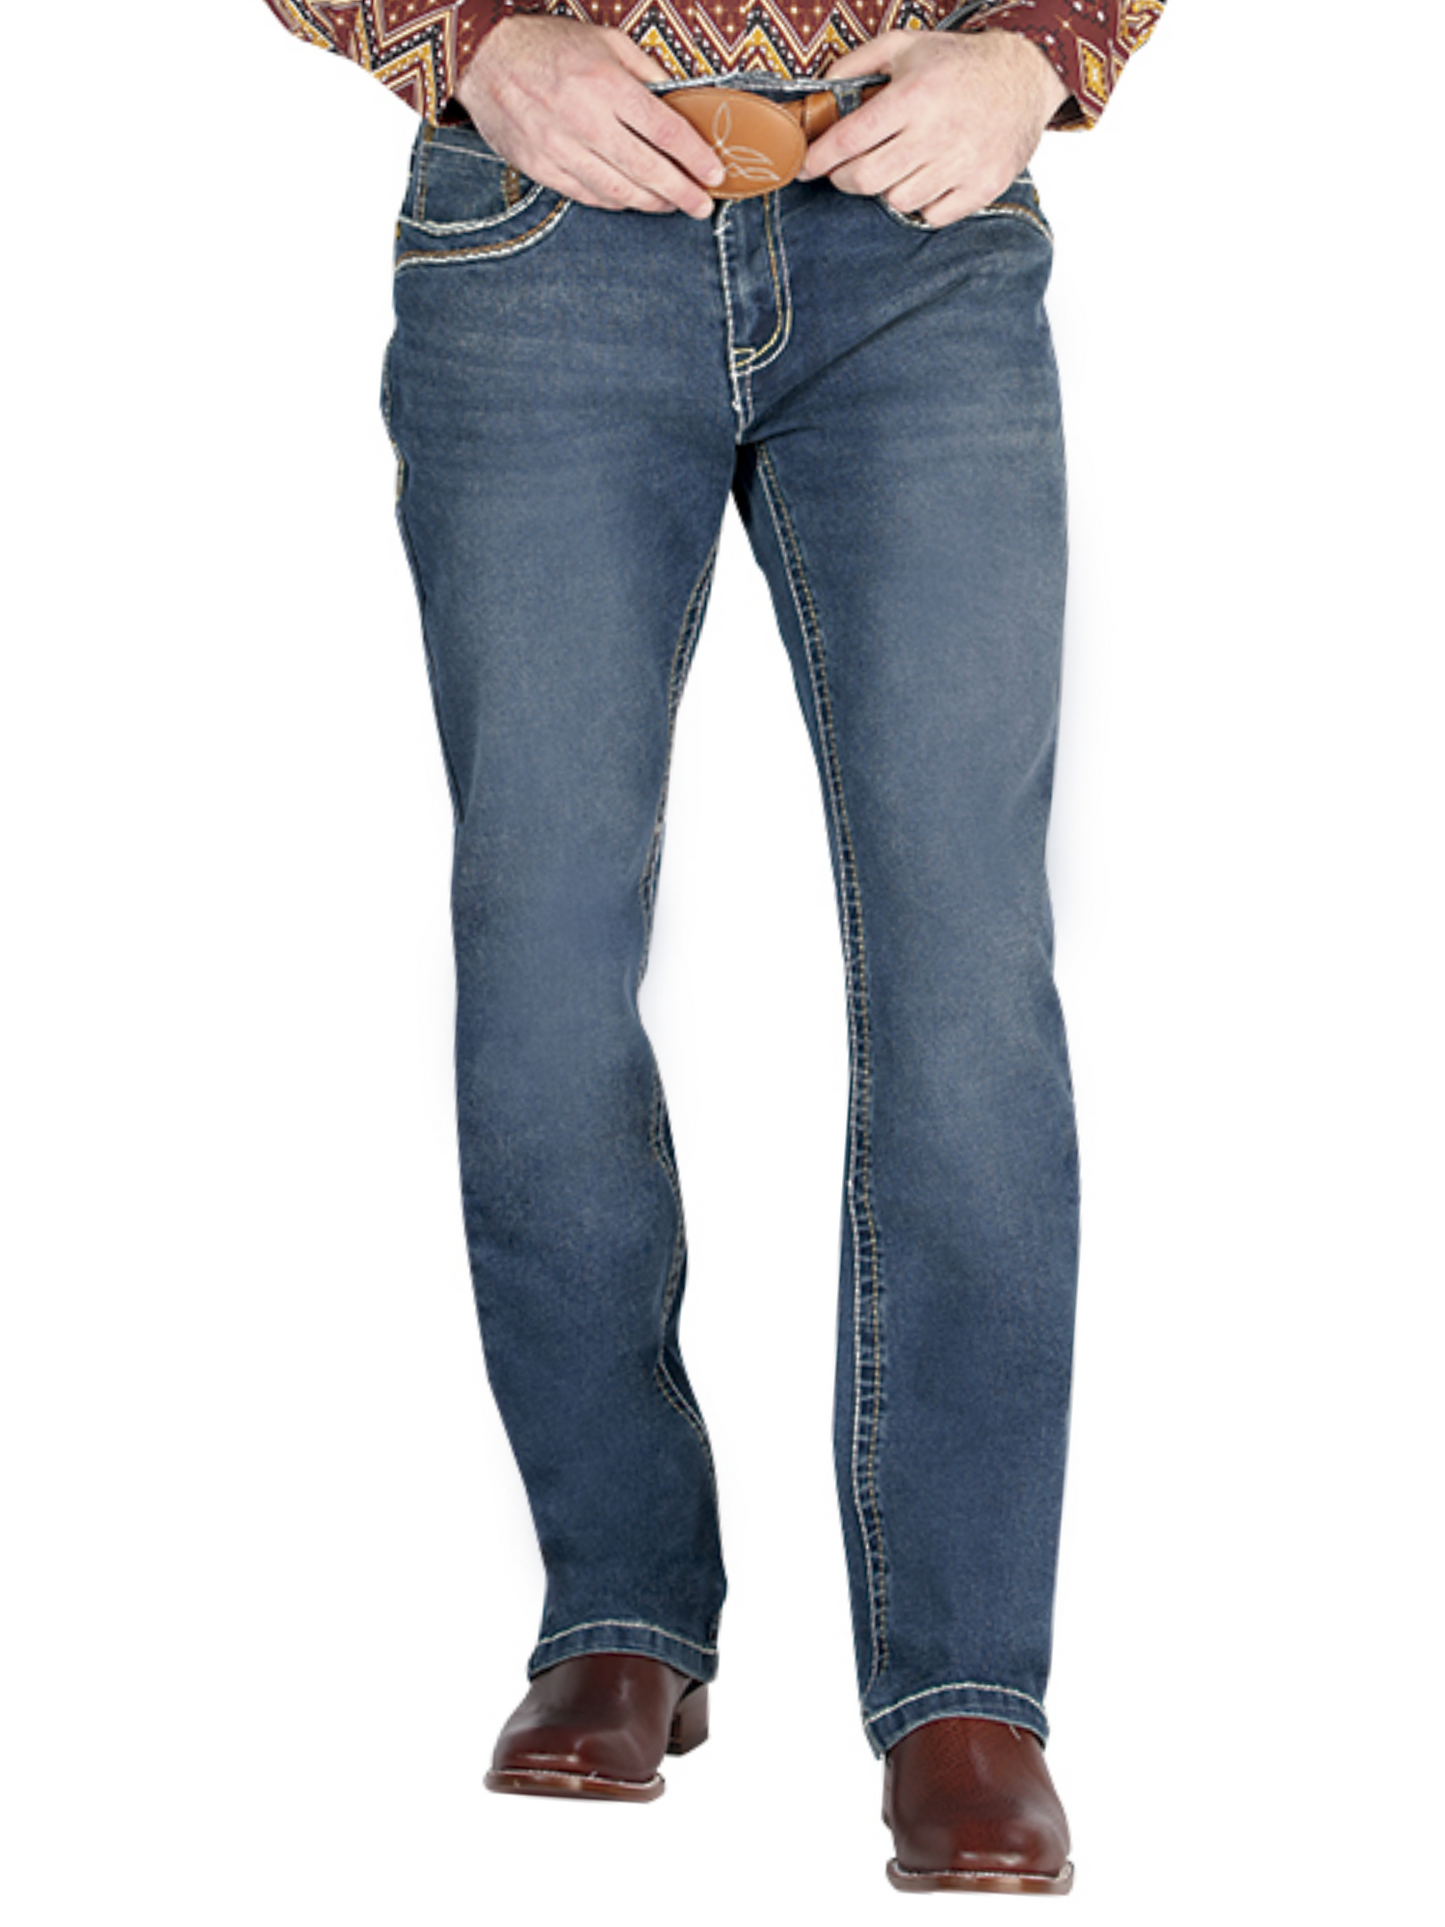 Pantalon Vaquero de Mezclilla Boot Cut Azul Oscuro para Hombre 'Centenario' - ID: 44841 Denim Jeans Centenario 